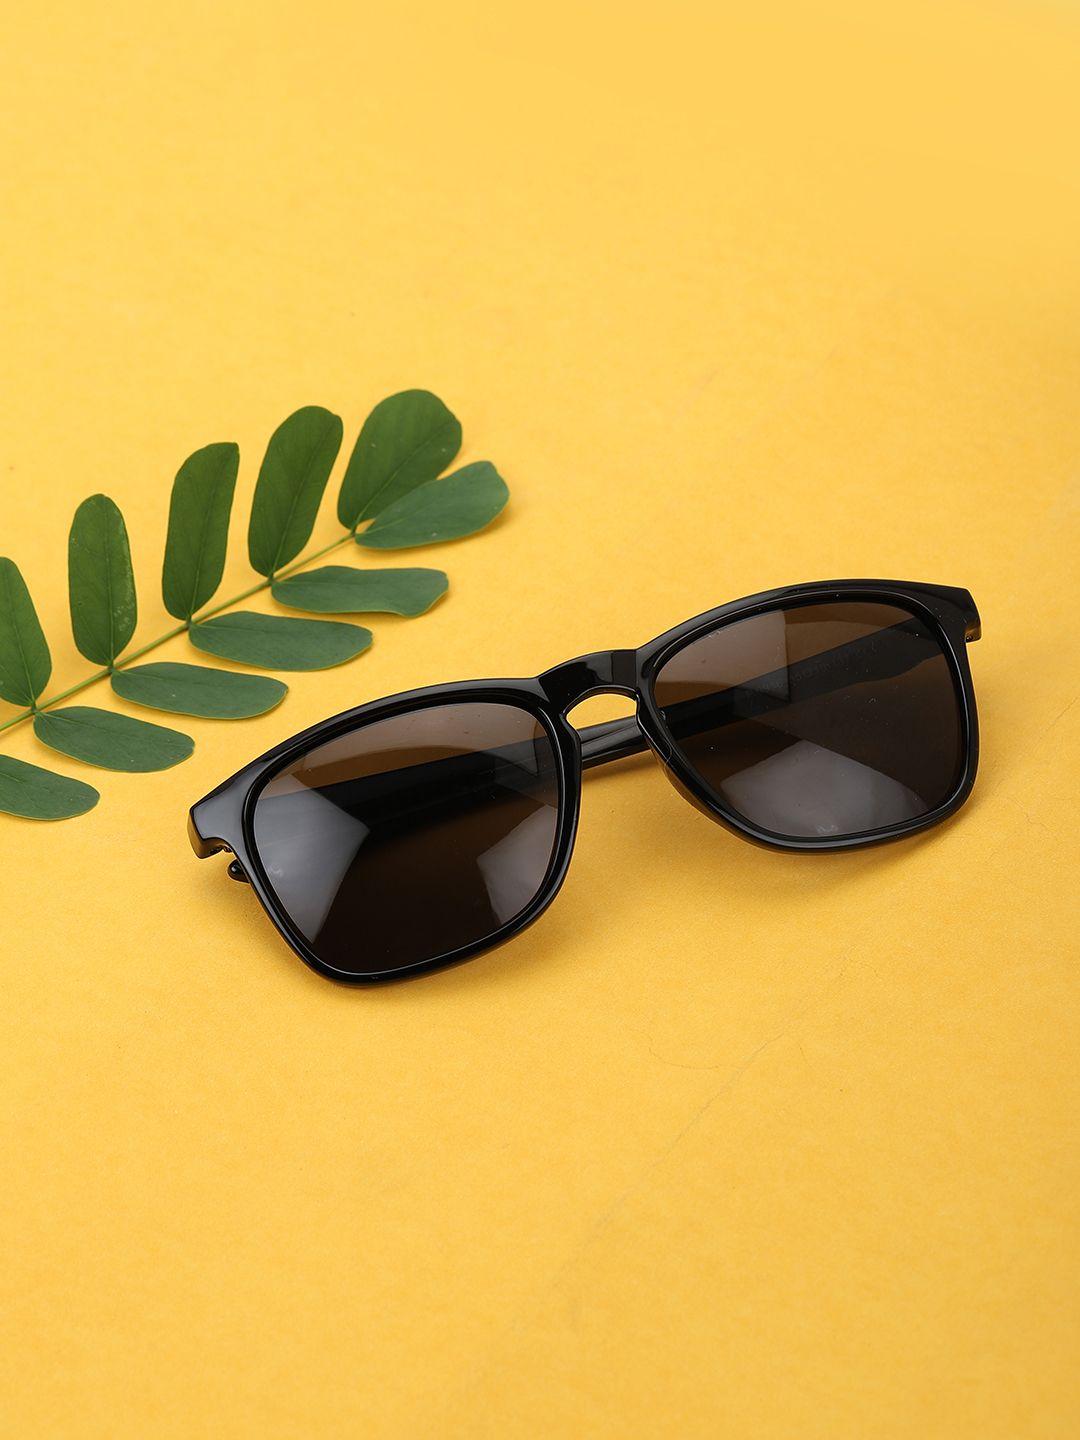 carlton-london-men-polarised-rectangle-sunglasses-0916